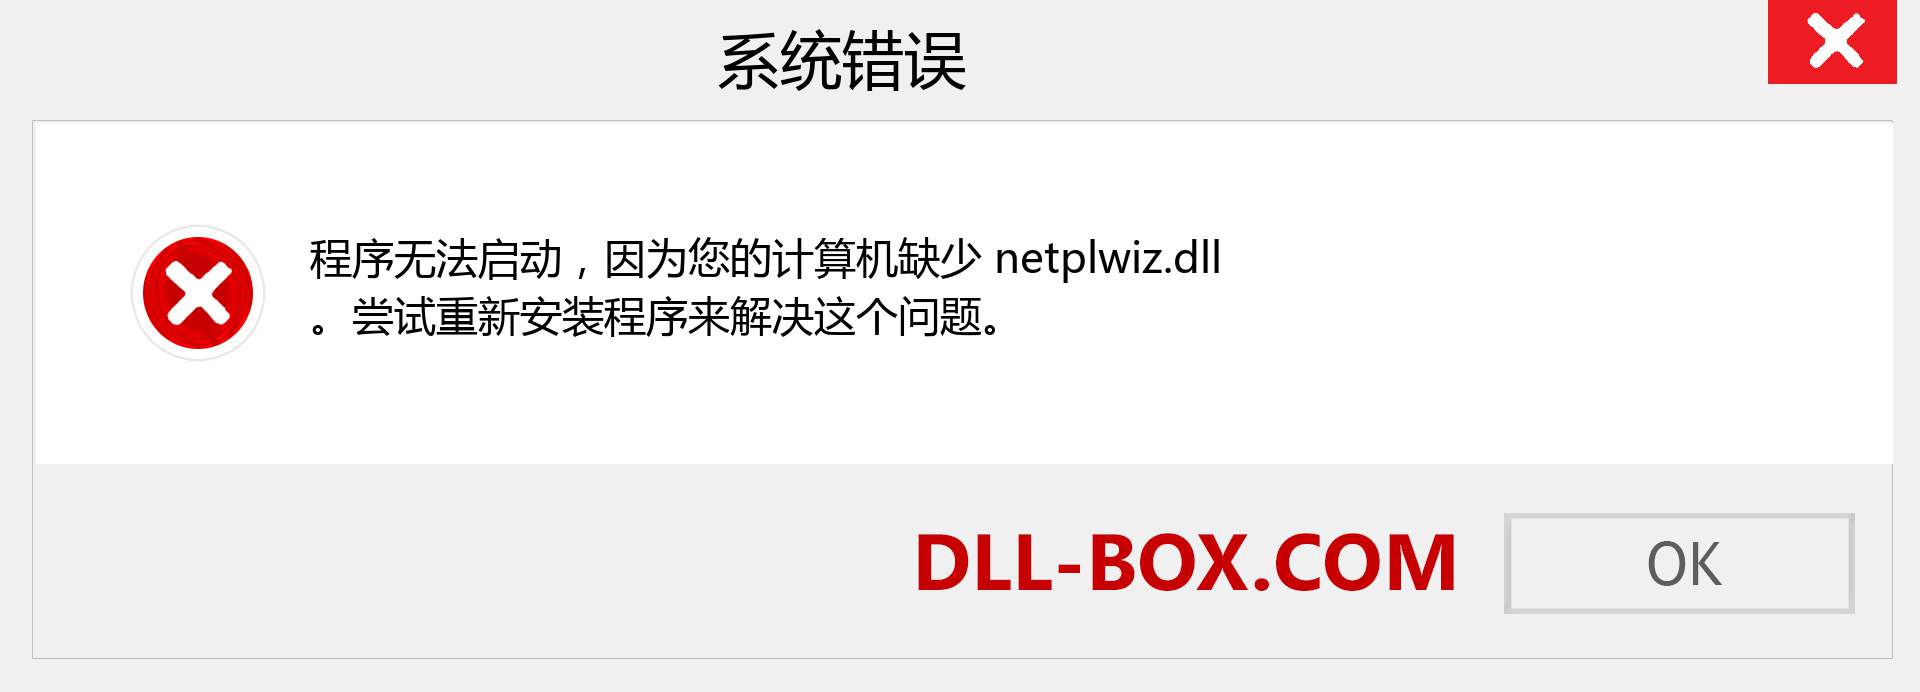 netplwiz.dll 文件丢失？。 适用于 Windows 7、8、10 的下载 - 修复 Windows、照片、图像上的 netplwiz dll 丢失错误